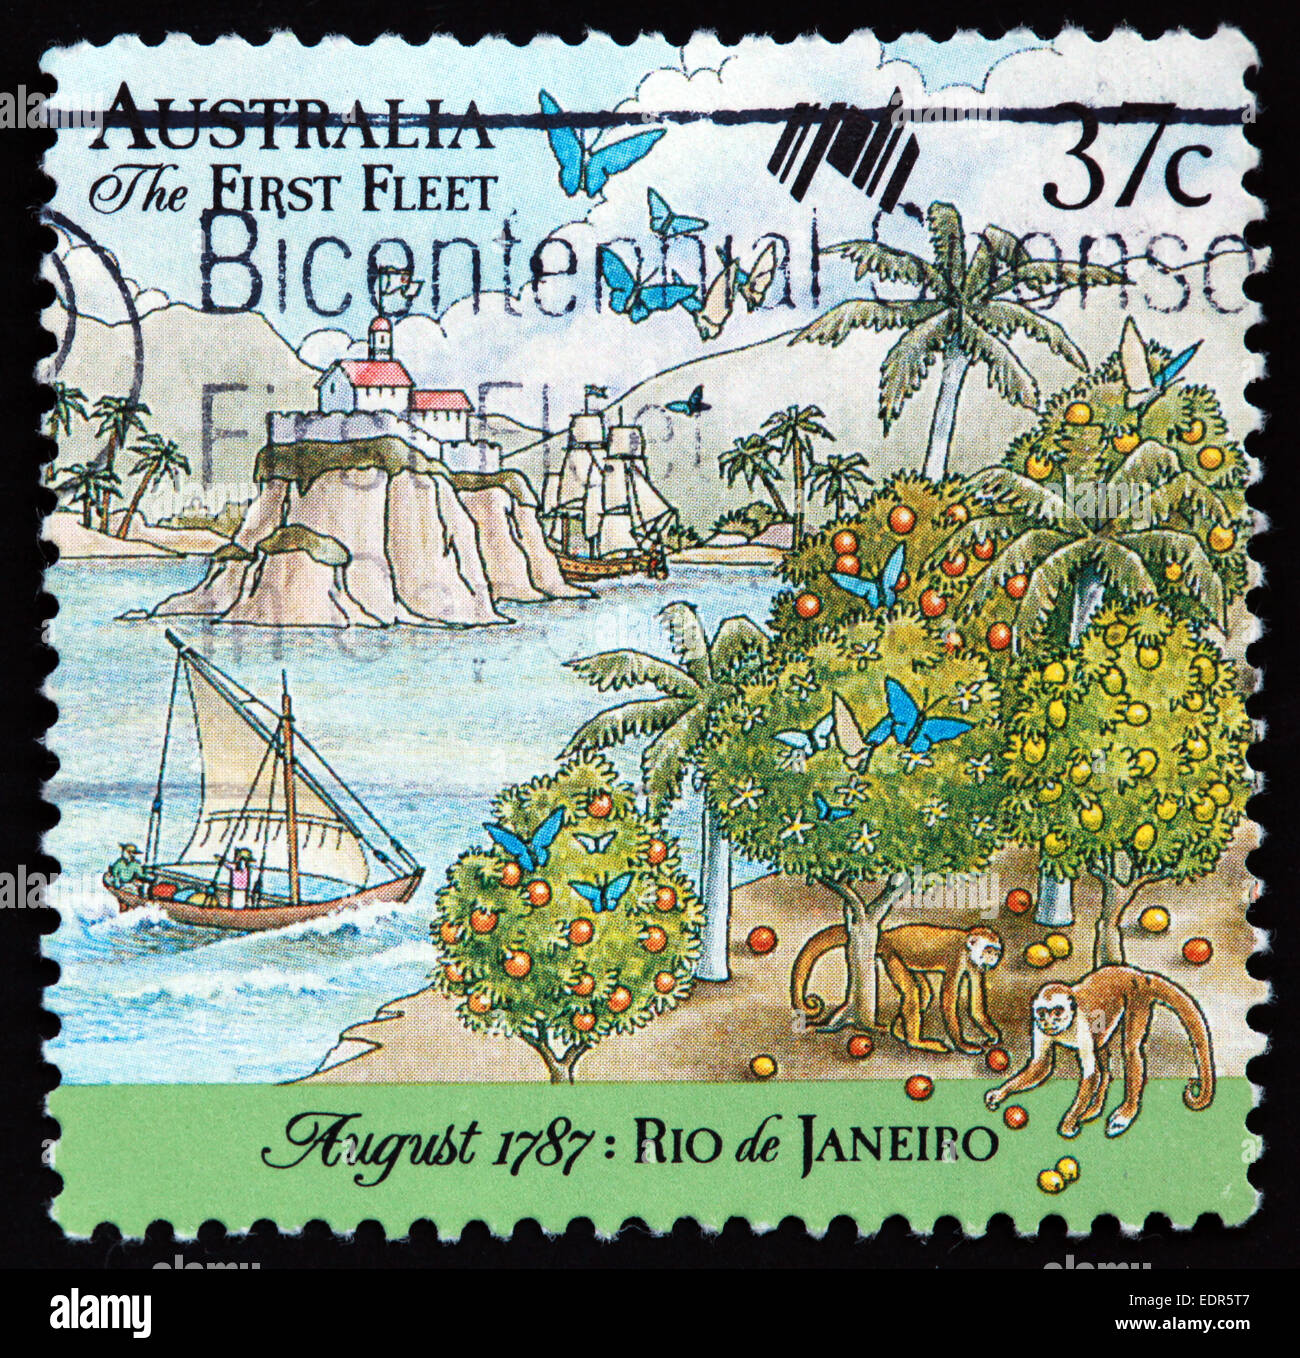 Usato e con timbro postale Australia / Timbro Austrailian 37c la prima flotta Agosto 1787 Rio de Janeiro Foto Stock